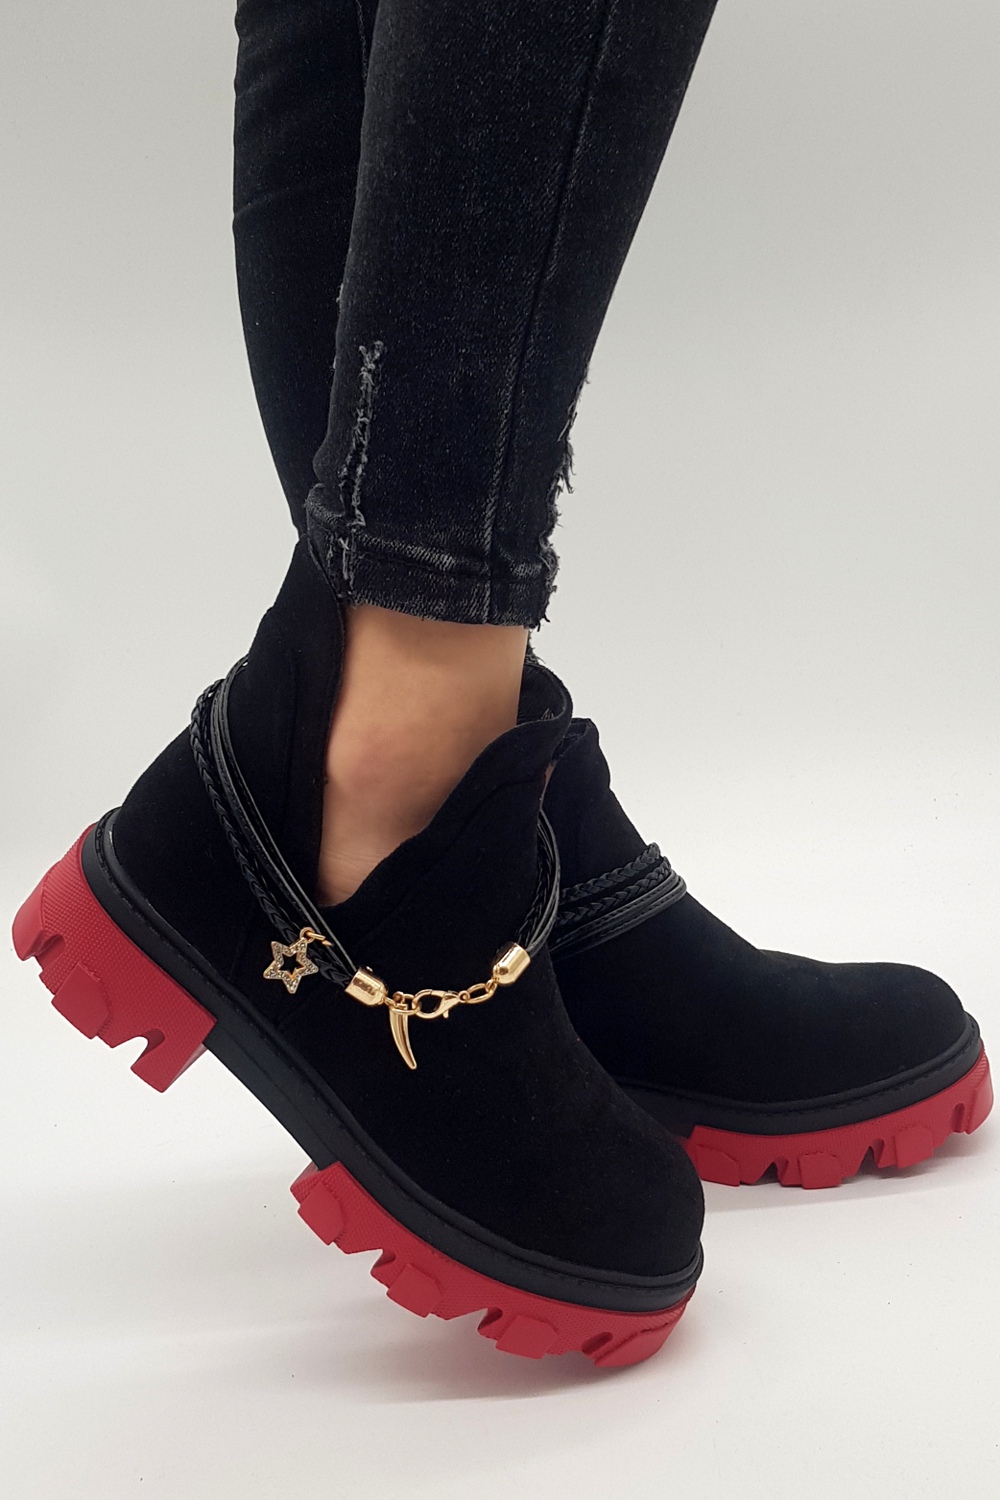 Czarno czerwone botki damskie buty